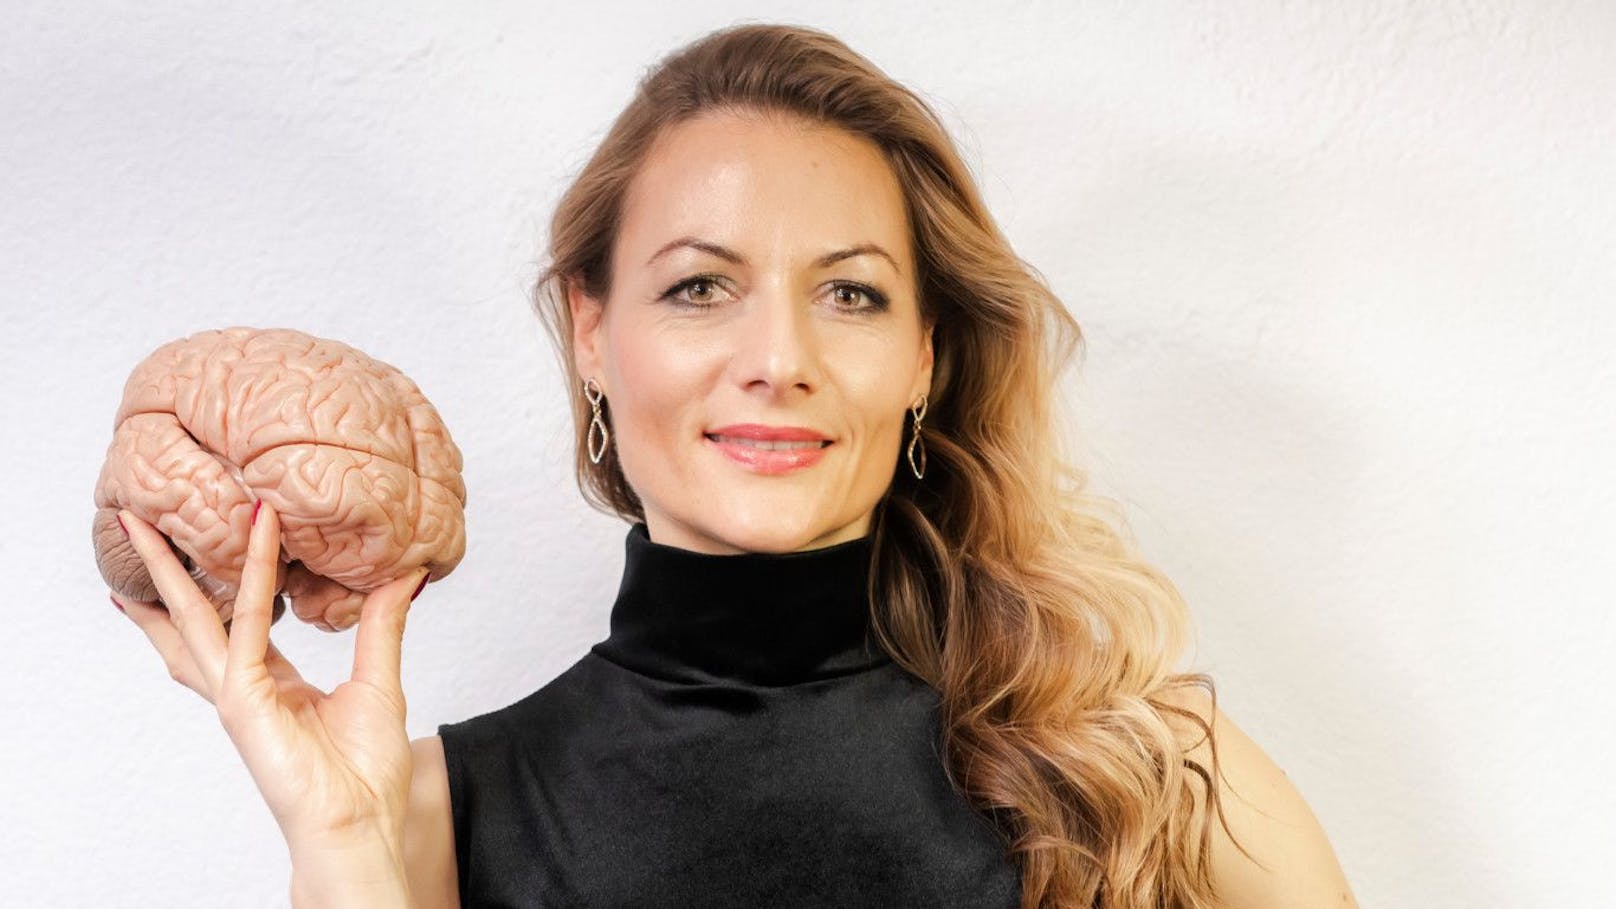 Barbara Studer ist Hirncoach und Neurowissenschaftlerin. Die 39-Jährige doziert an der Universität Bern und bietet mit ihrer Firma hirncoach.ch Gehirntrainings an. 